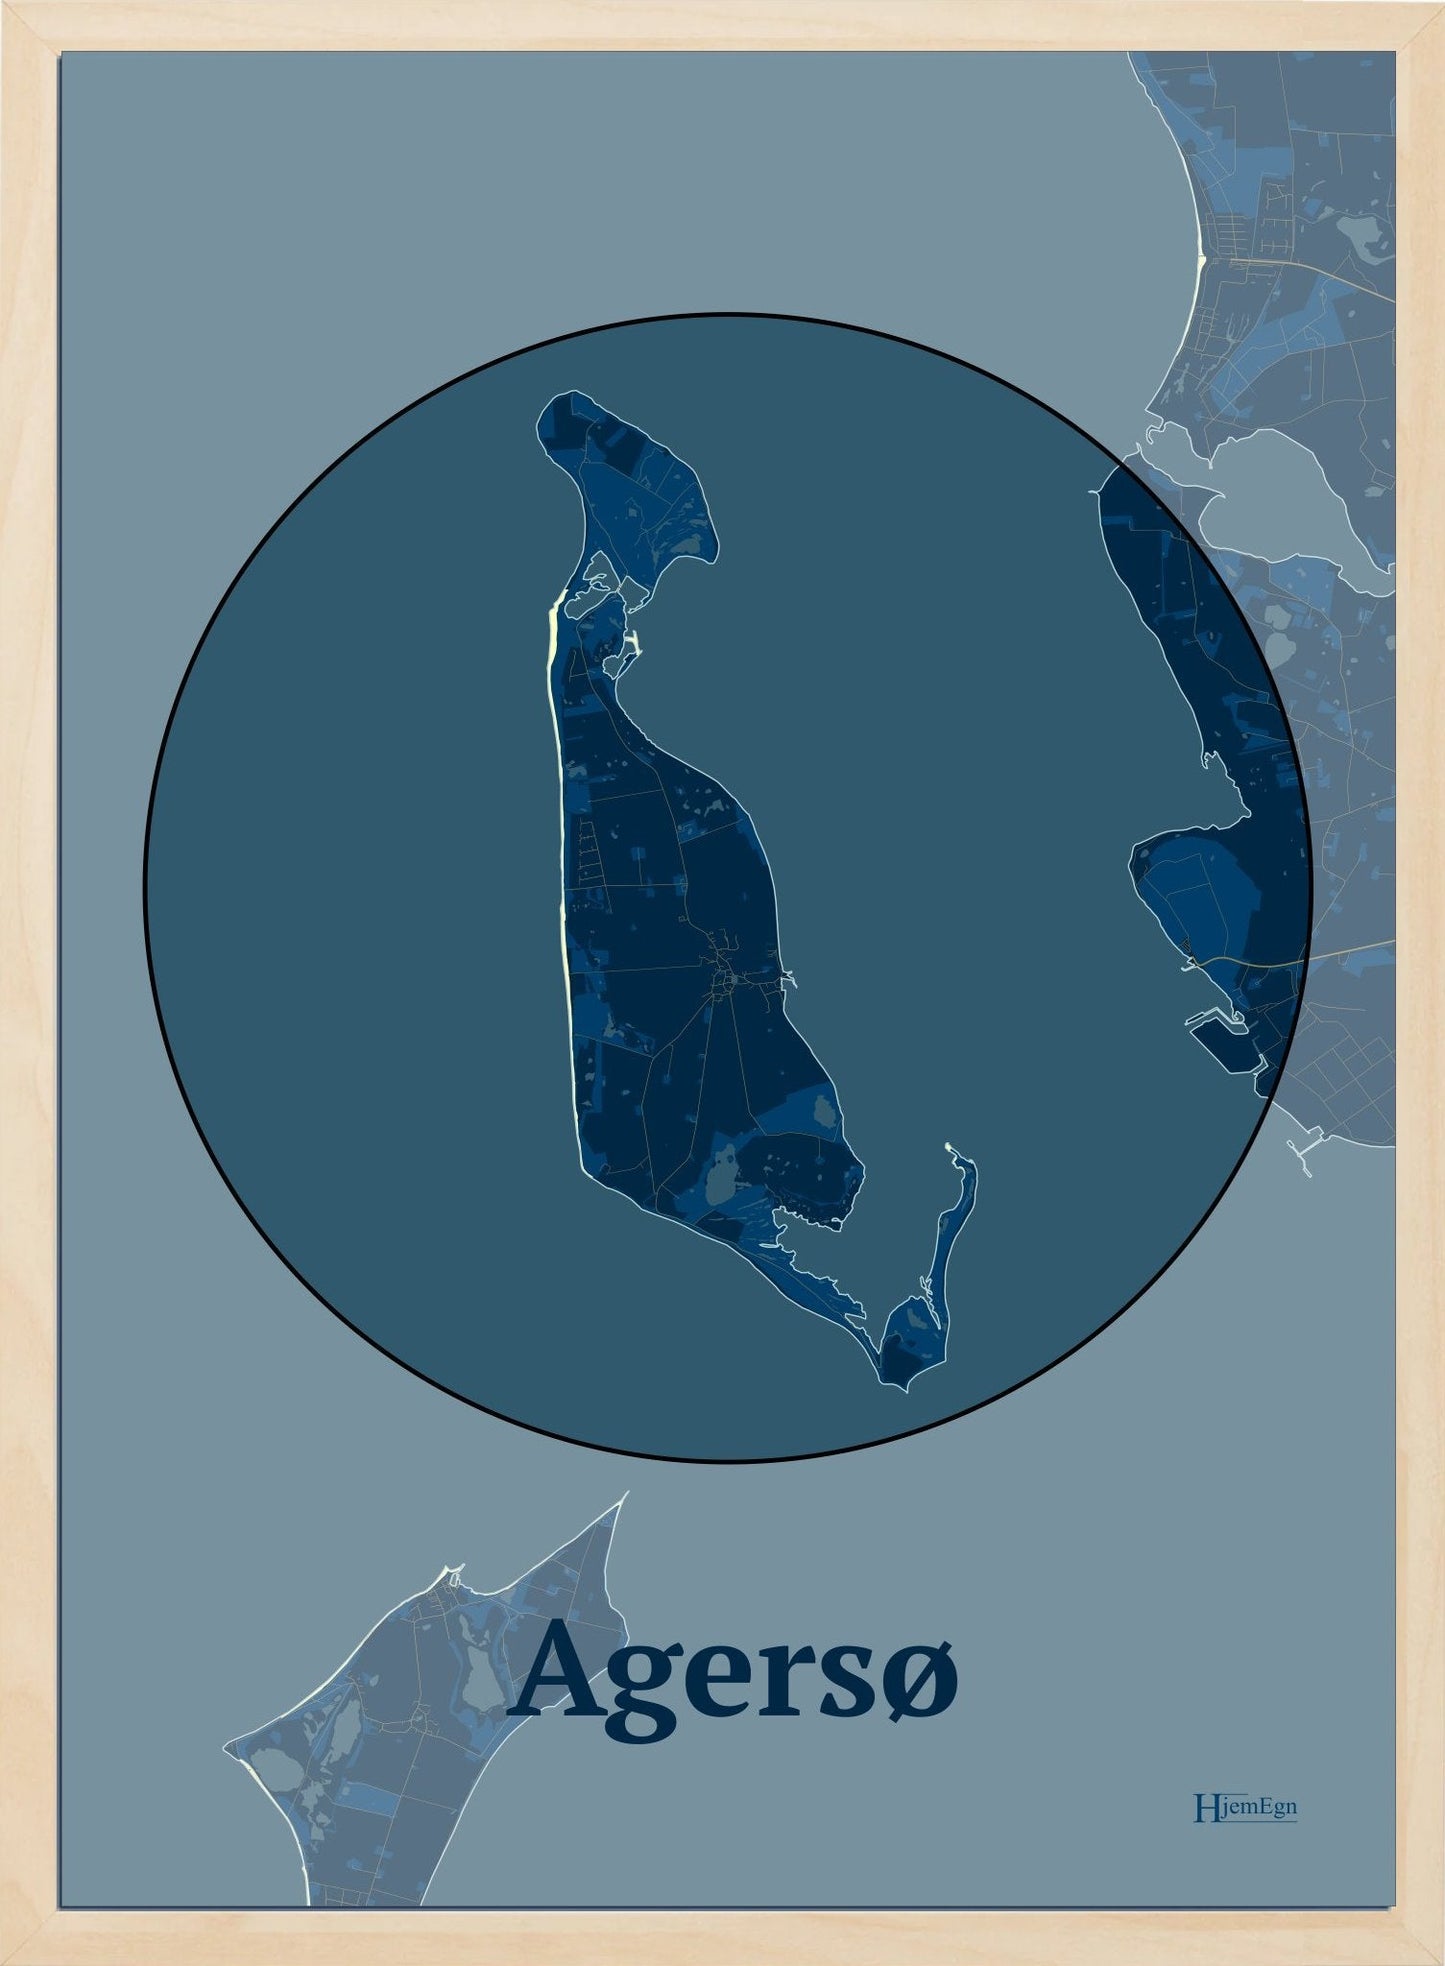 Agersø plakat i farve mørk blå og HjemEgn.dk design centrum. Design ø-kort for Agersø